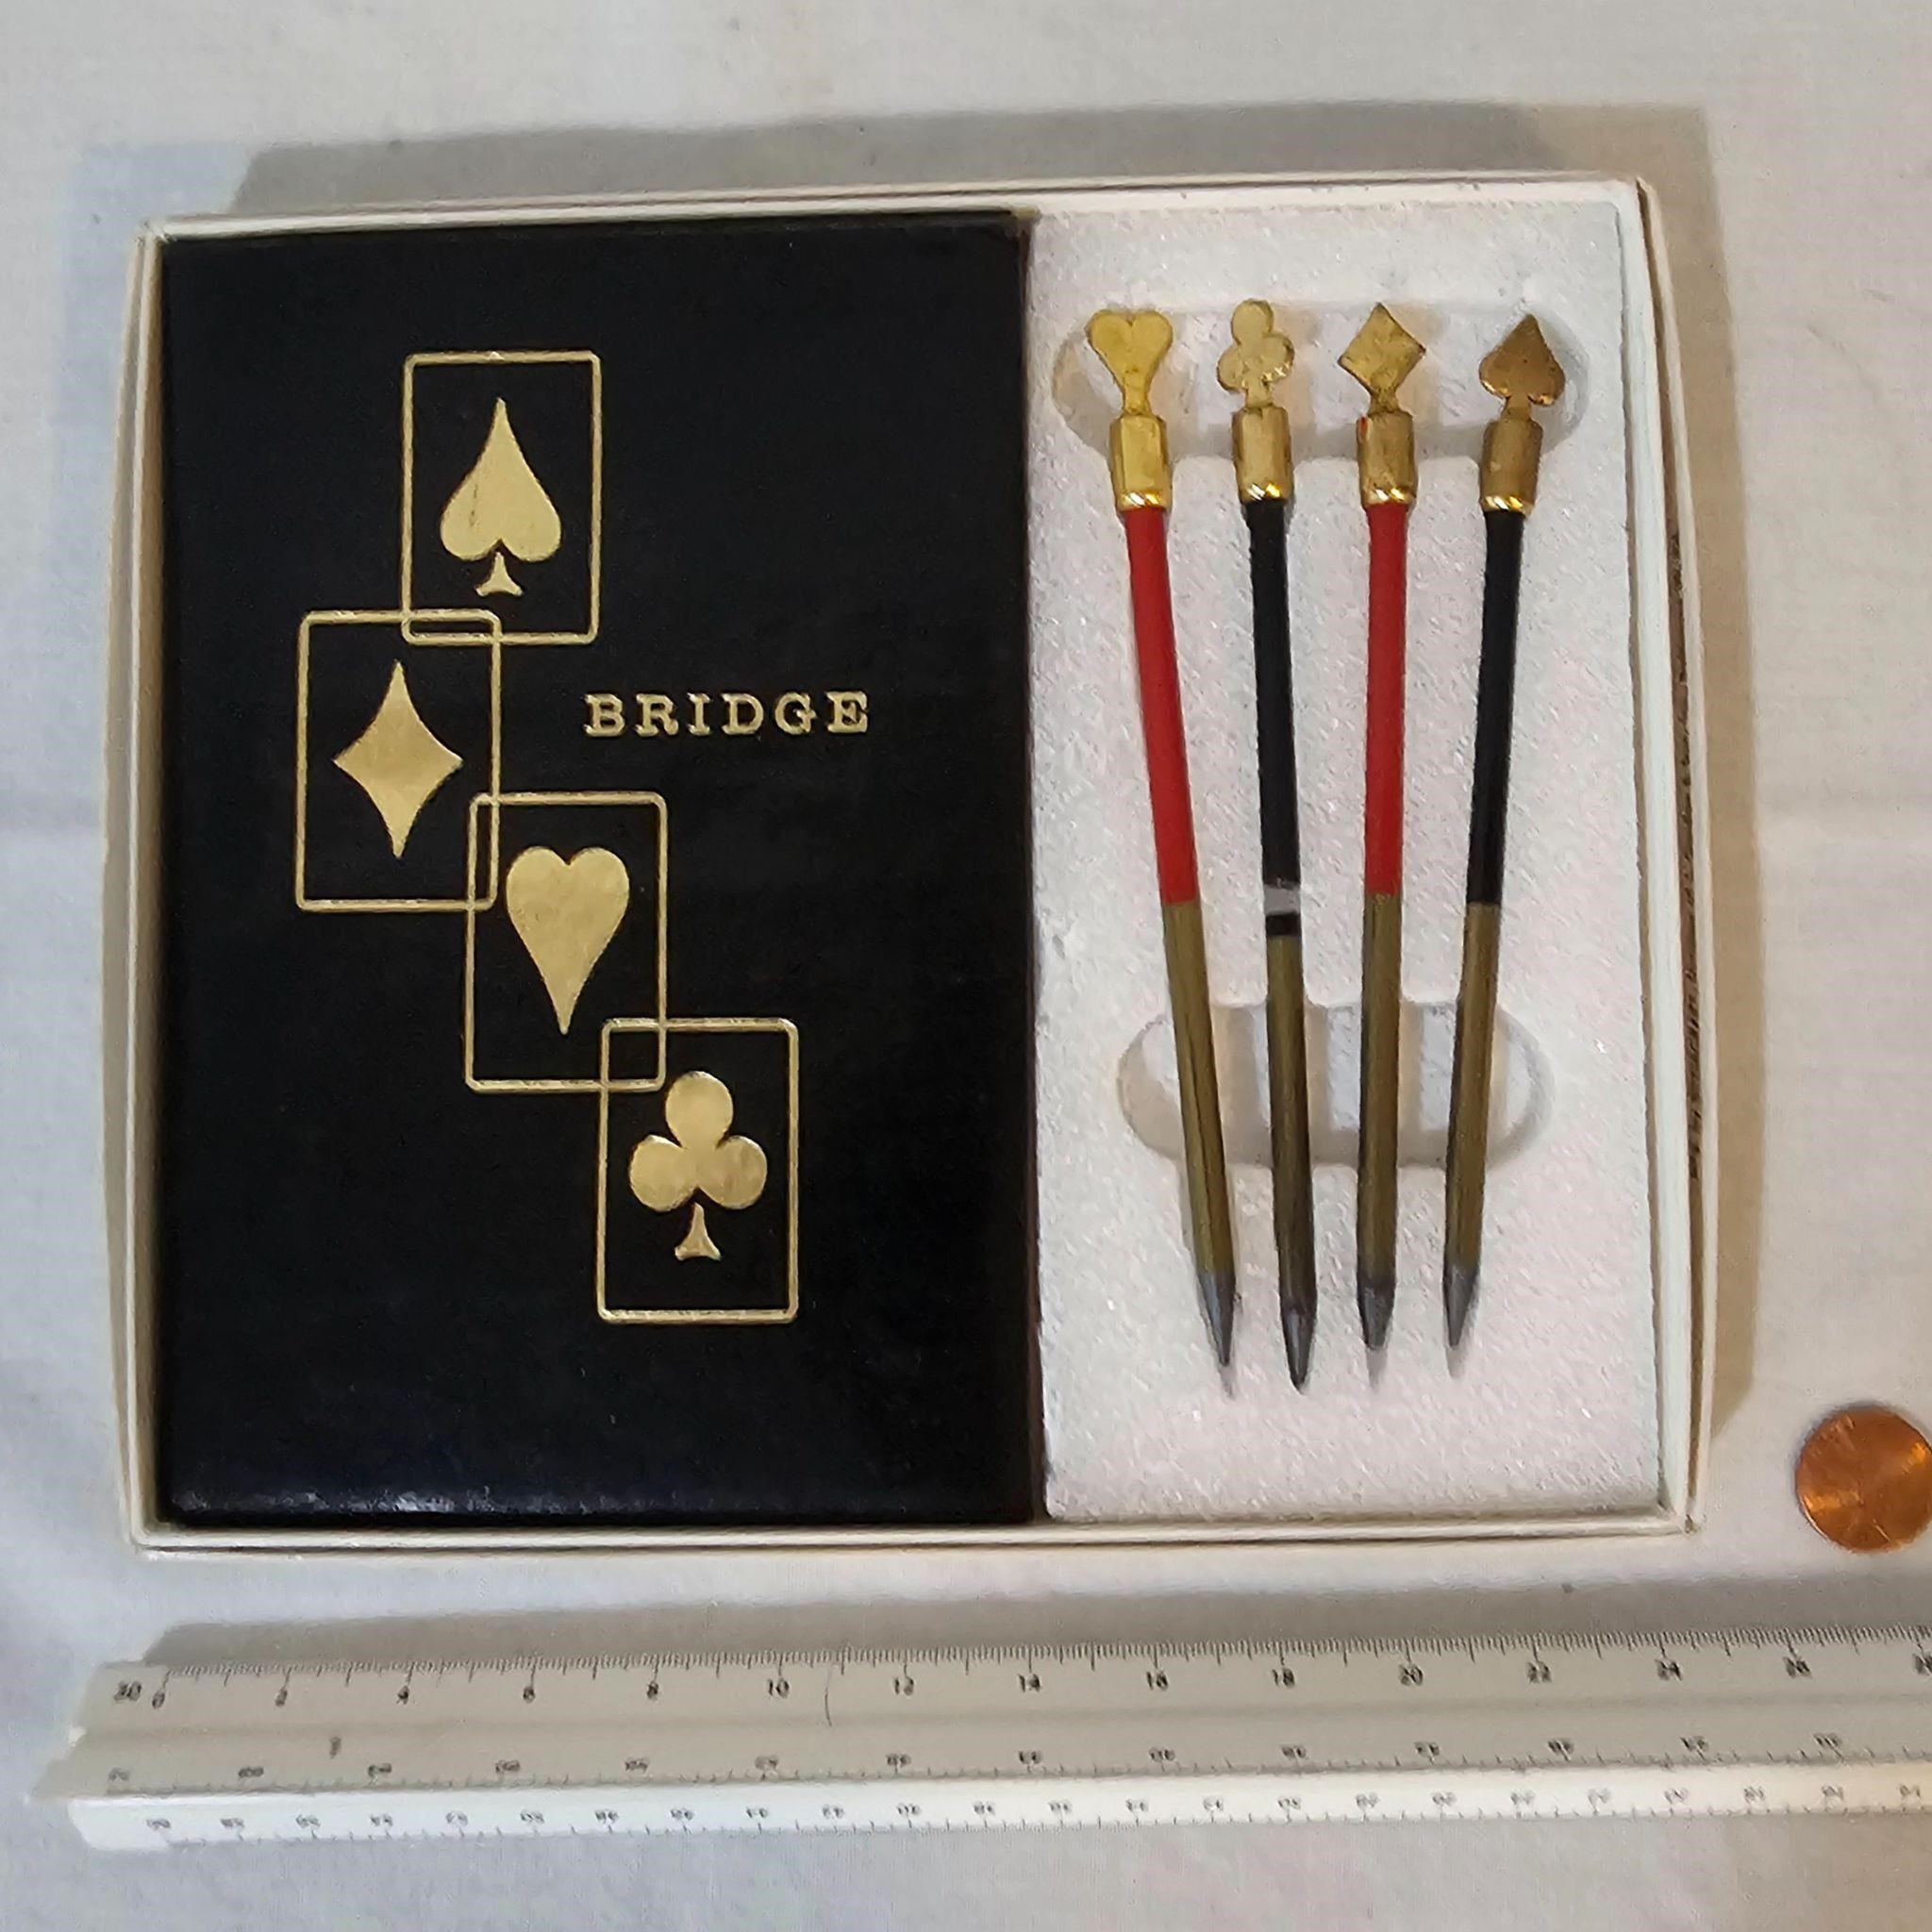 Bridge scorepad & graphite pencil game set